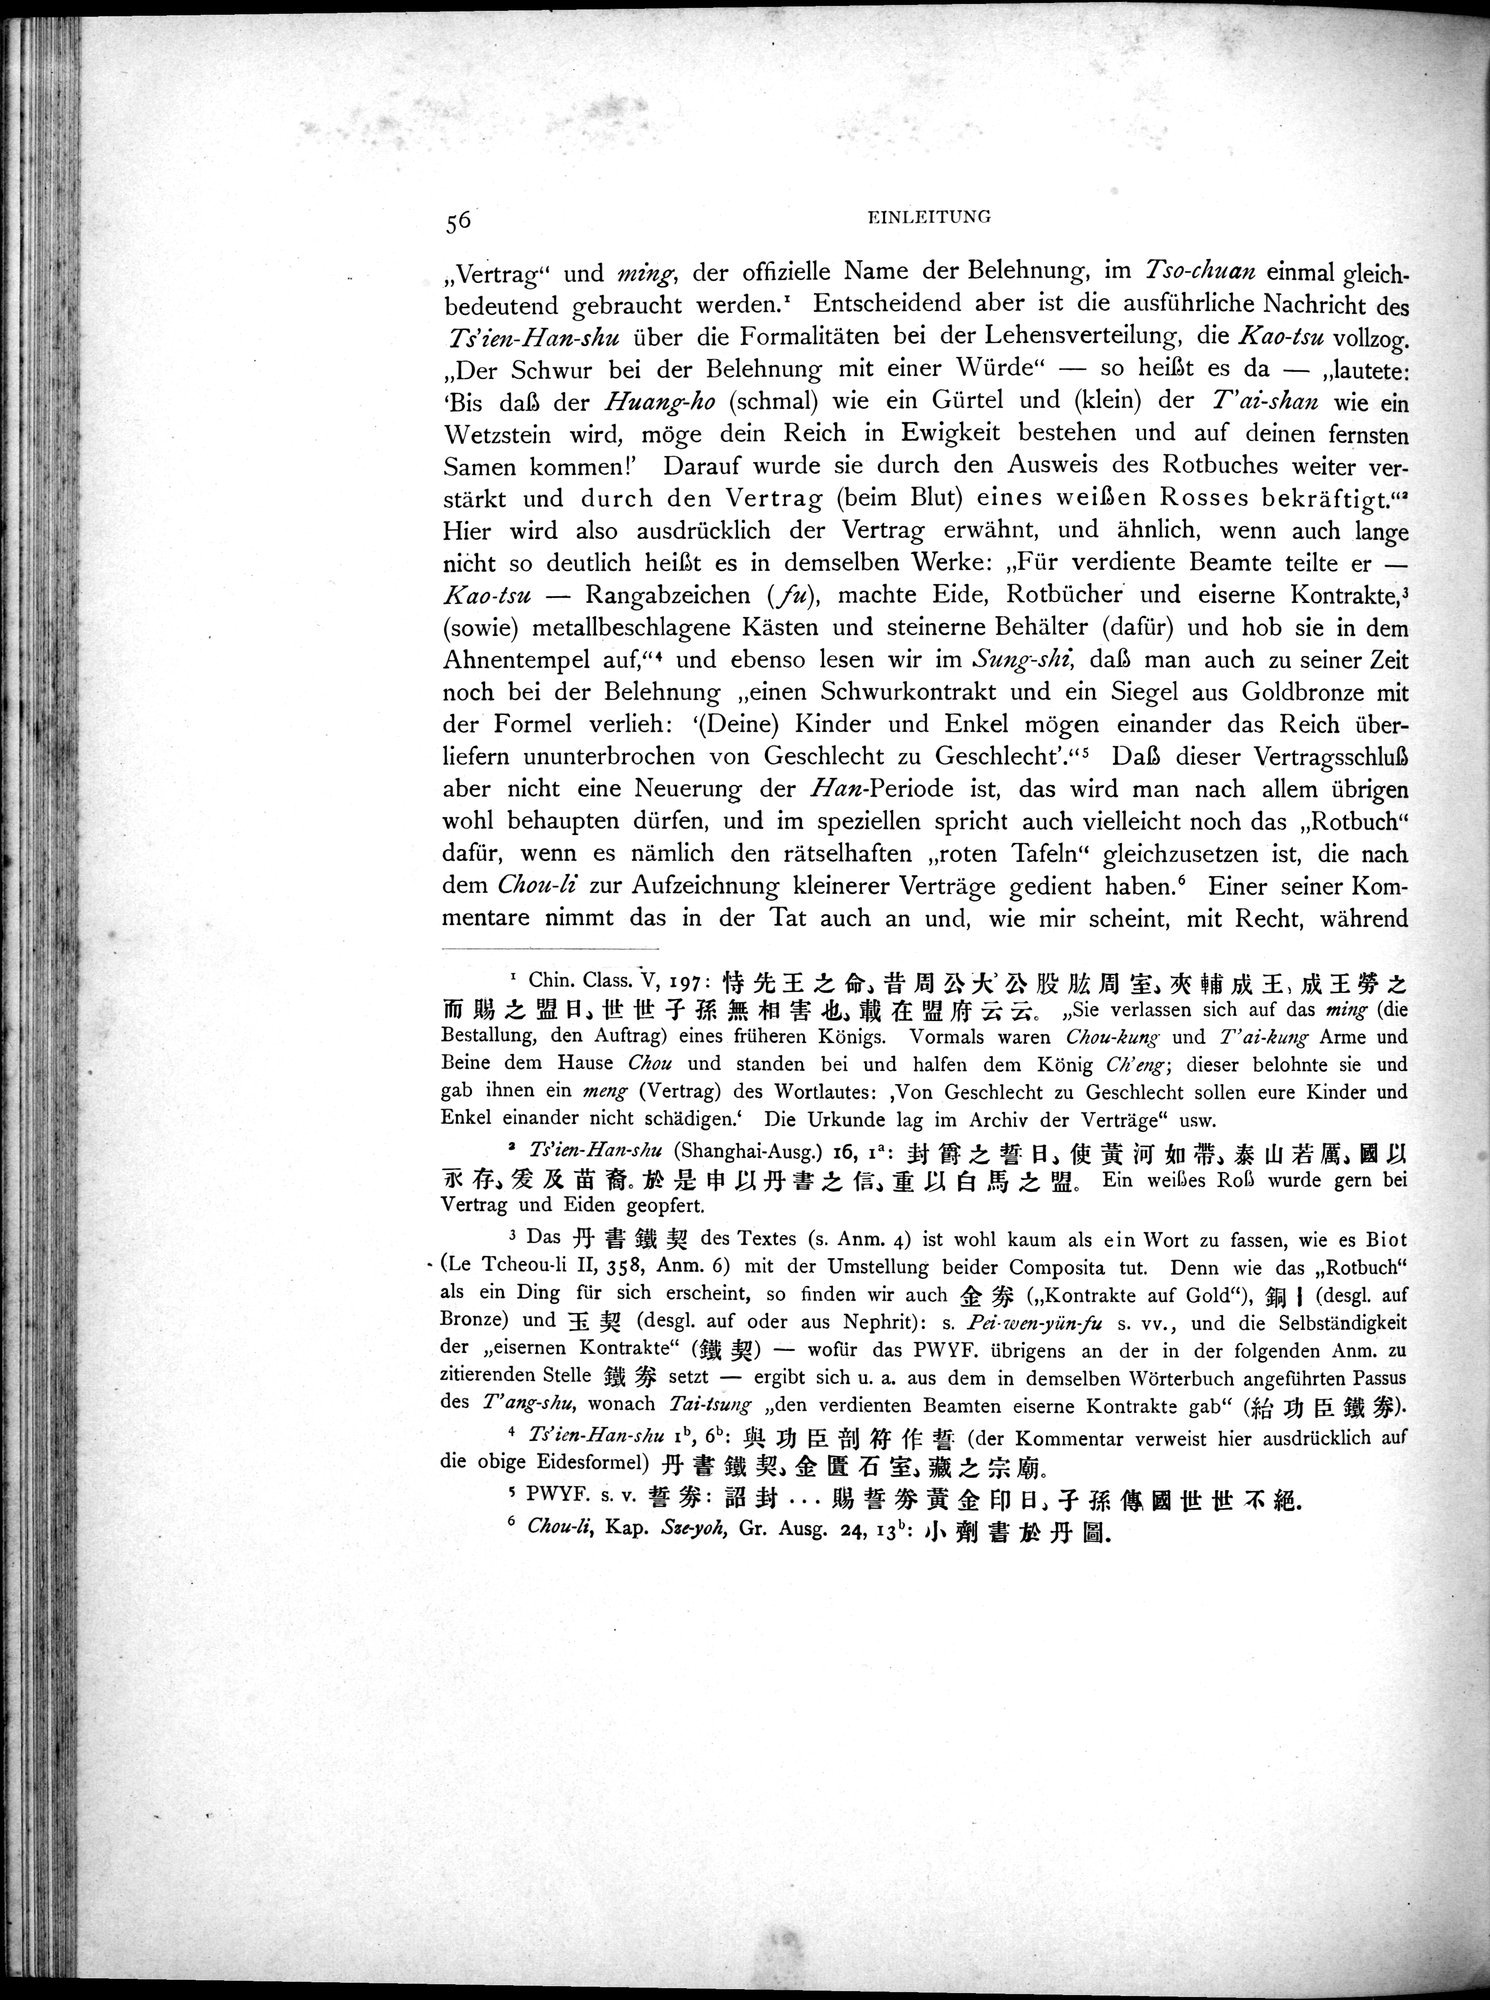 Die Chinesischen Handschriften- und sonstigen Kleinfunde Sven Hedins in Lou-lan : vol.1 / 80 ページ（白黒高解像度画像）